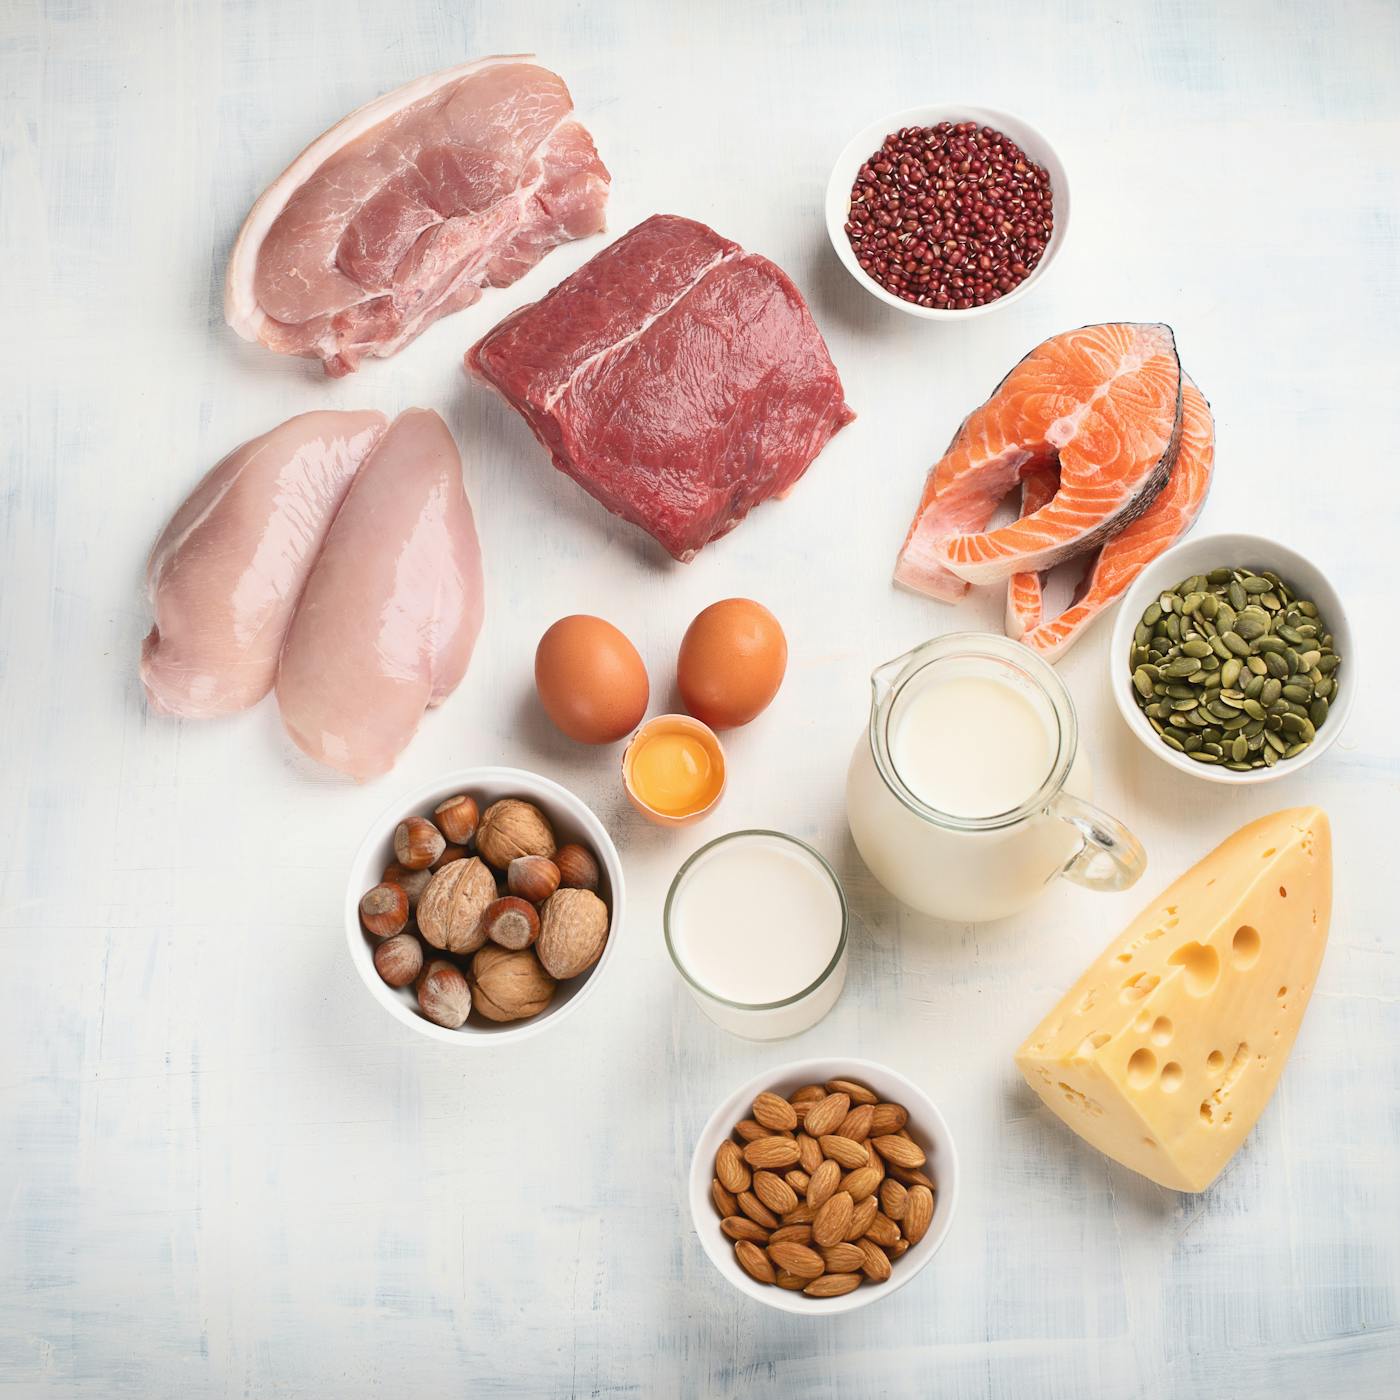 Tierische Quellen von Aminosäuren wie Milchprodukte, Fleisch, Eier, Fisch